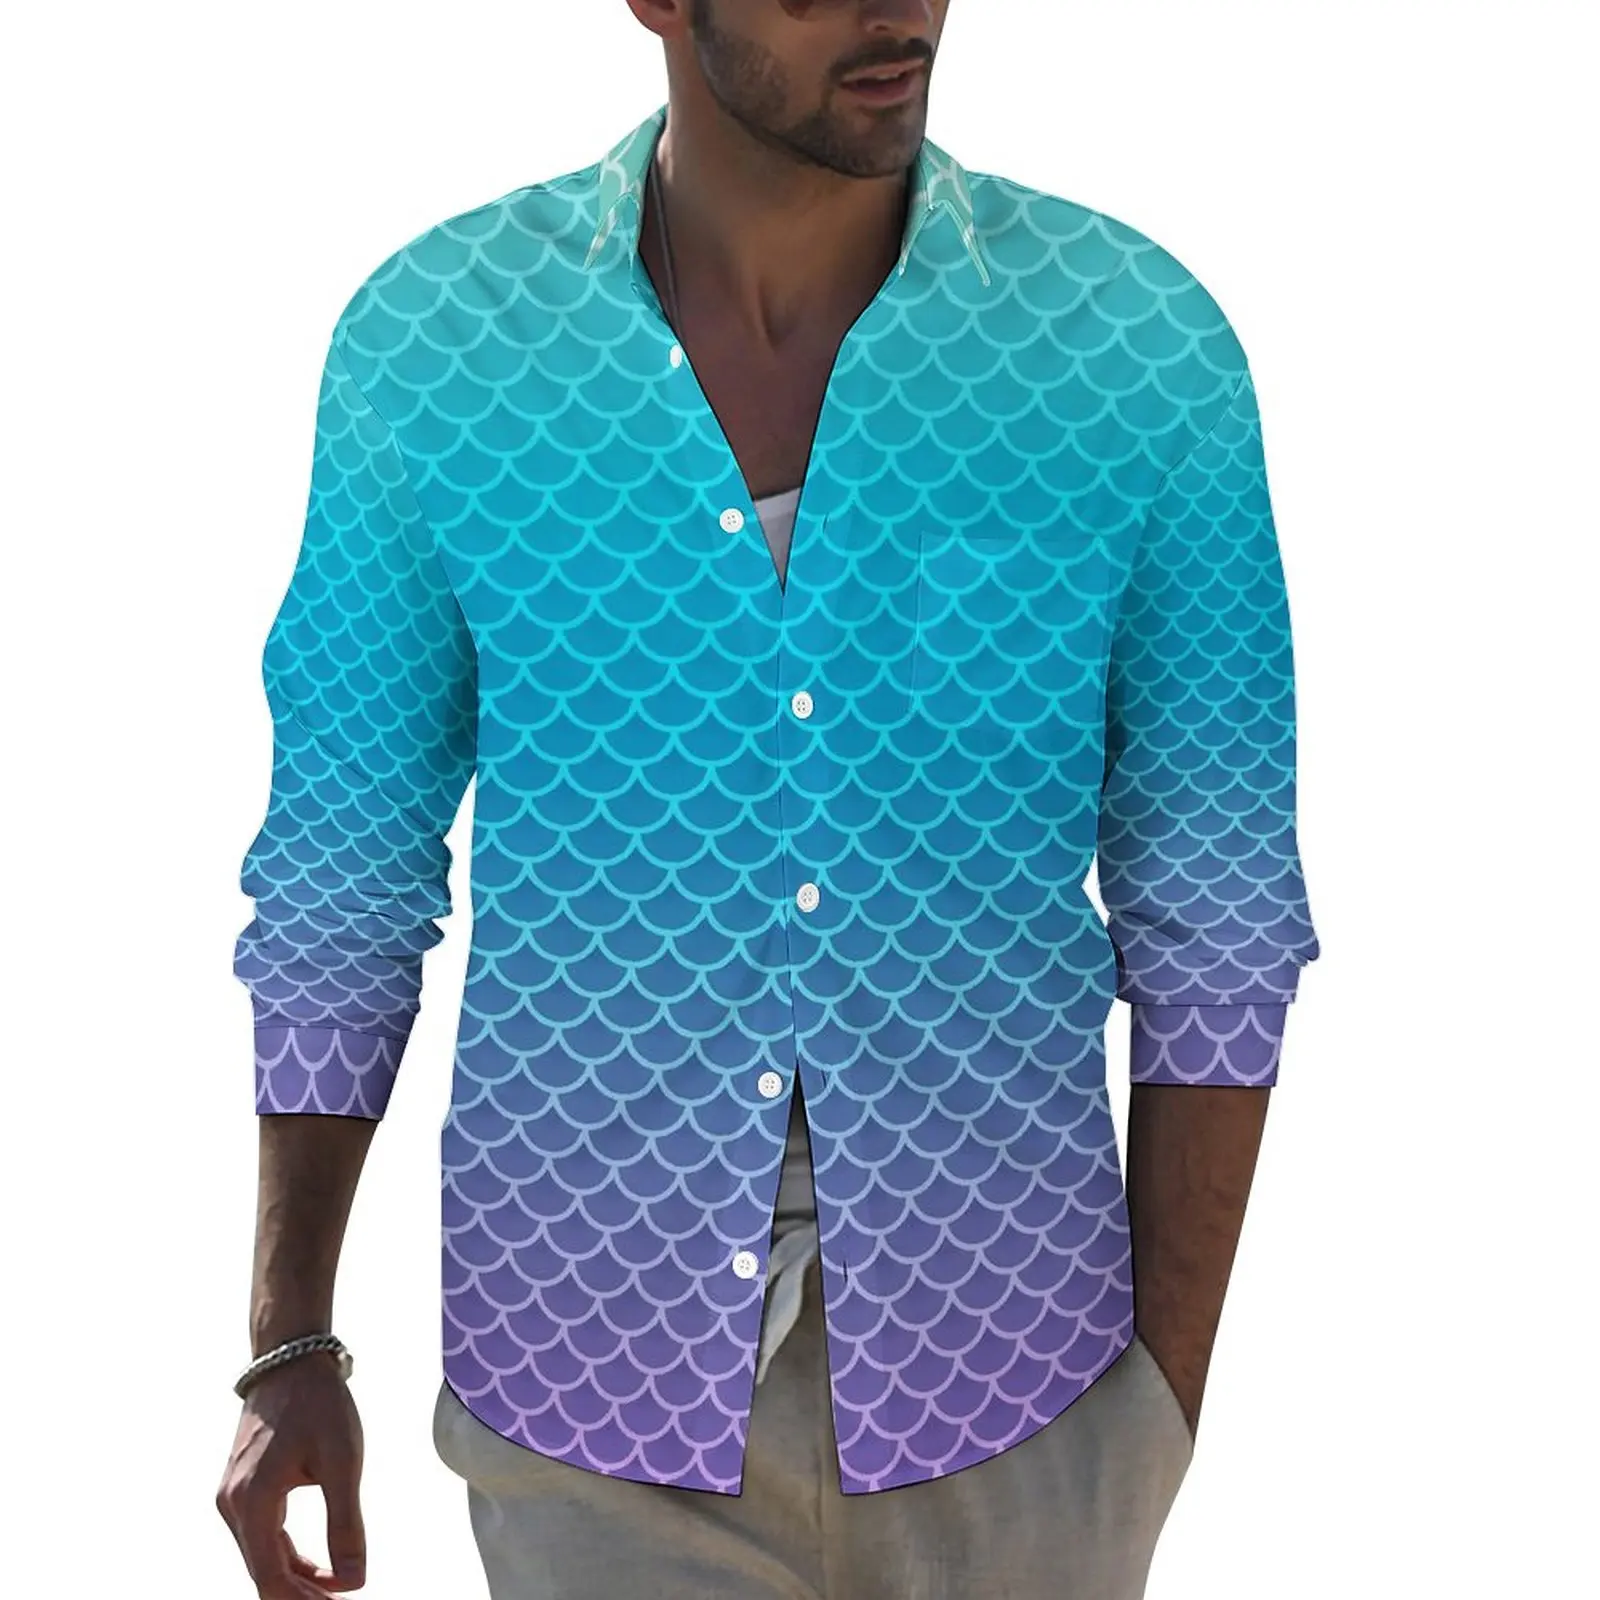 

Рубашка для мермад с эффектом омбре, мужские повседневные рубашки в виде рыбьей чешуи, блузки в уличном стиле с принтом, трендовые Топы большого размера с длинным рукавом, подарок на день рождения